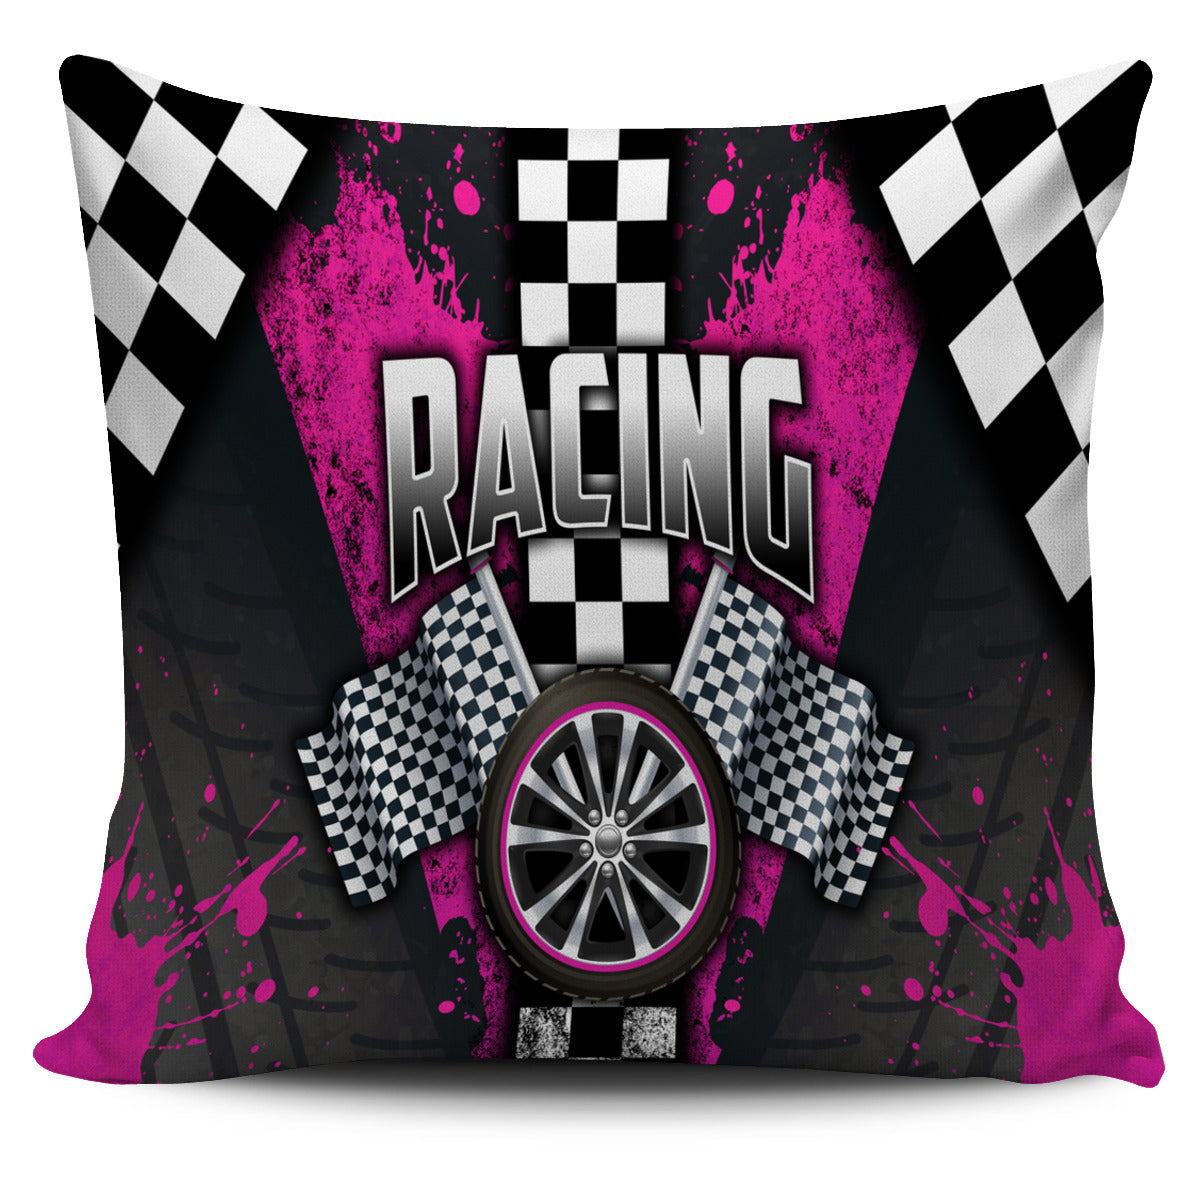 Racing Pillow Cover Pink